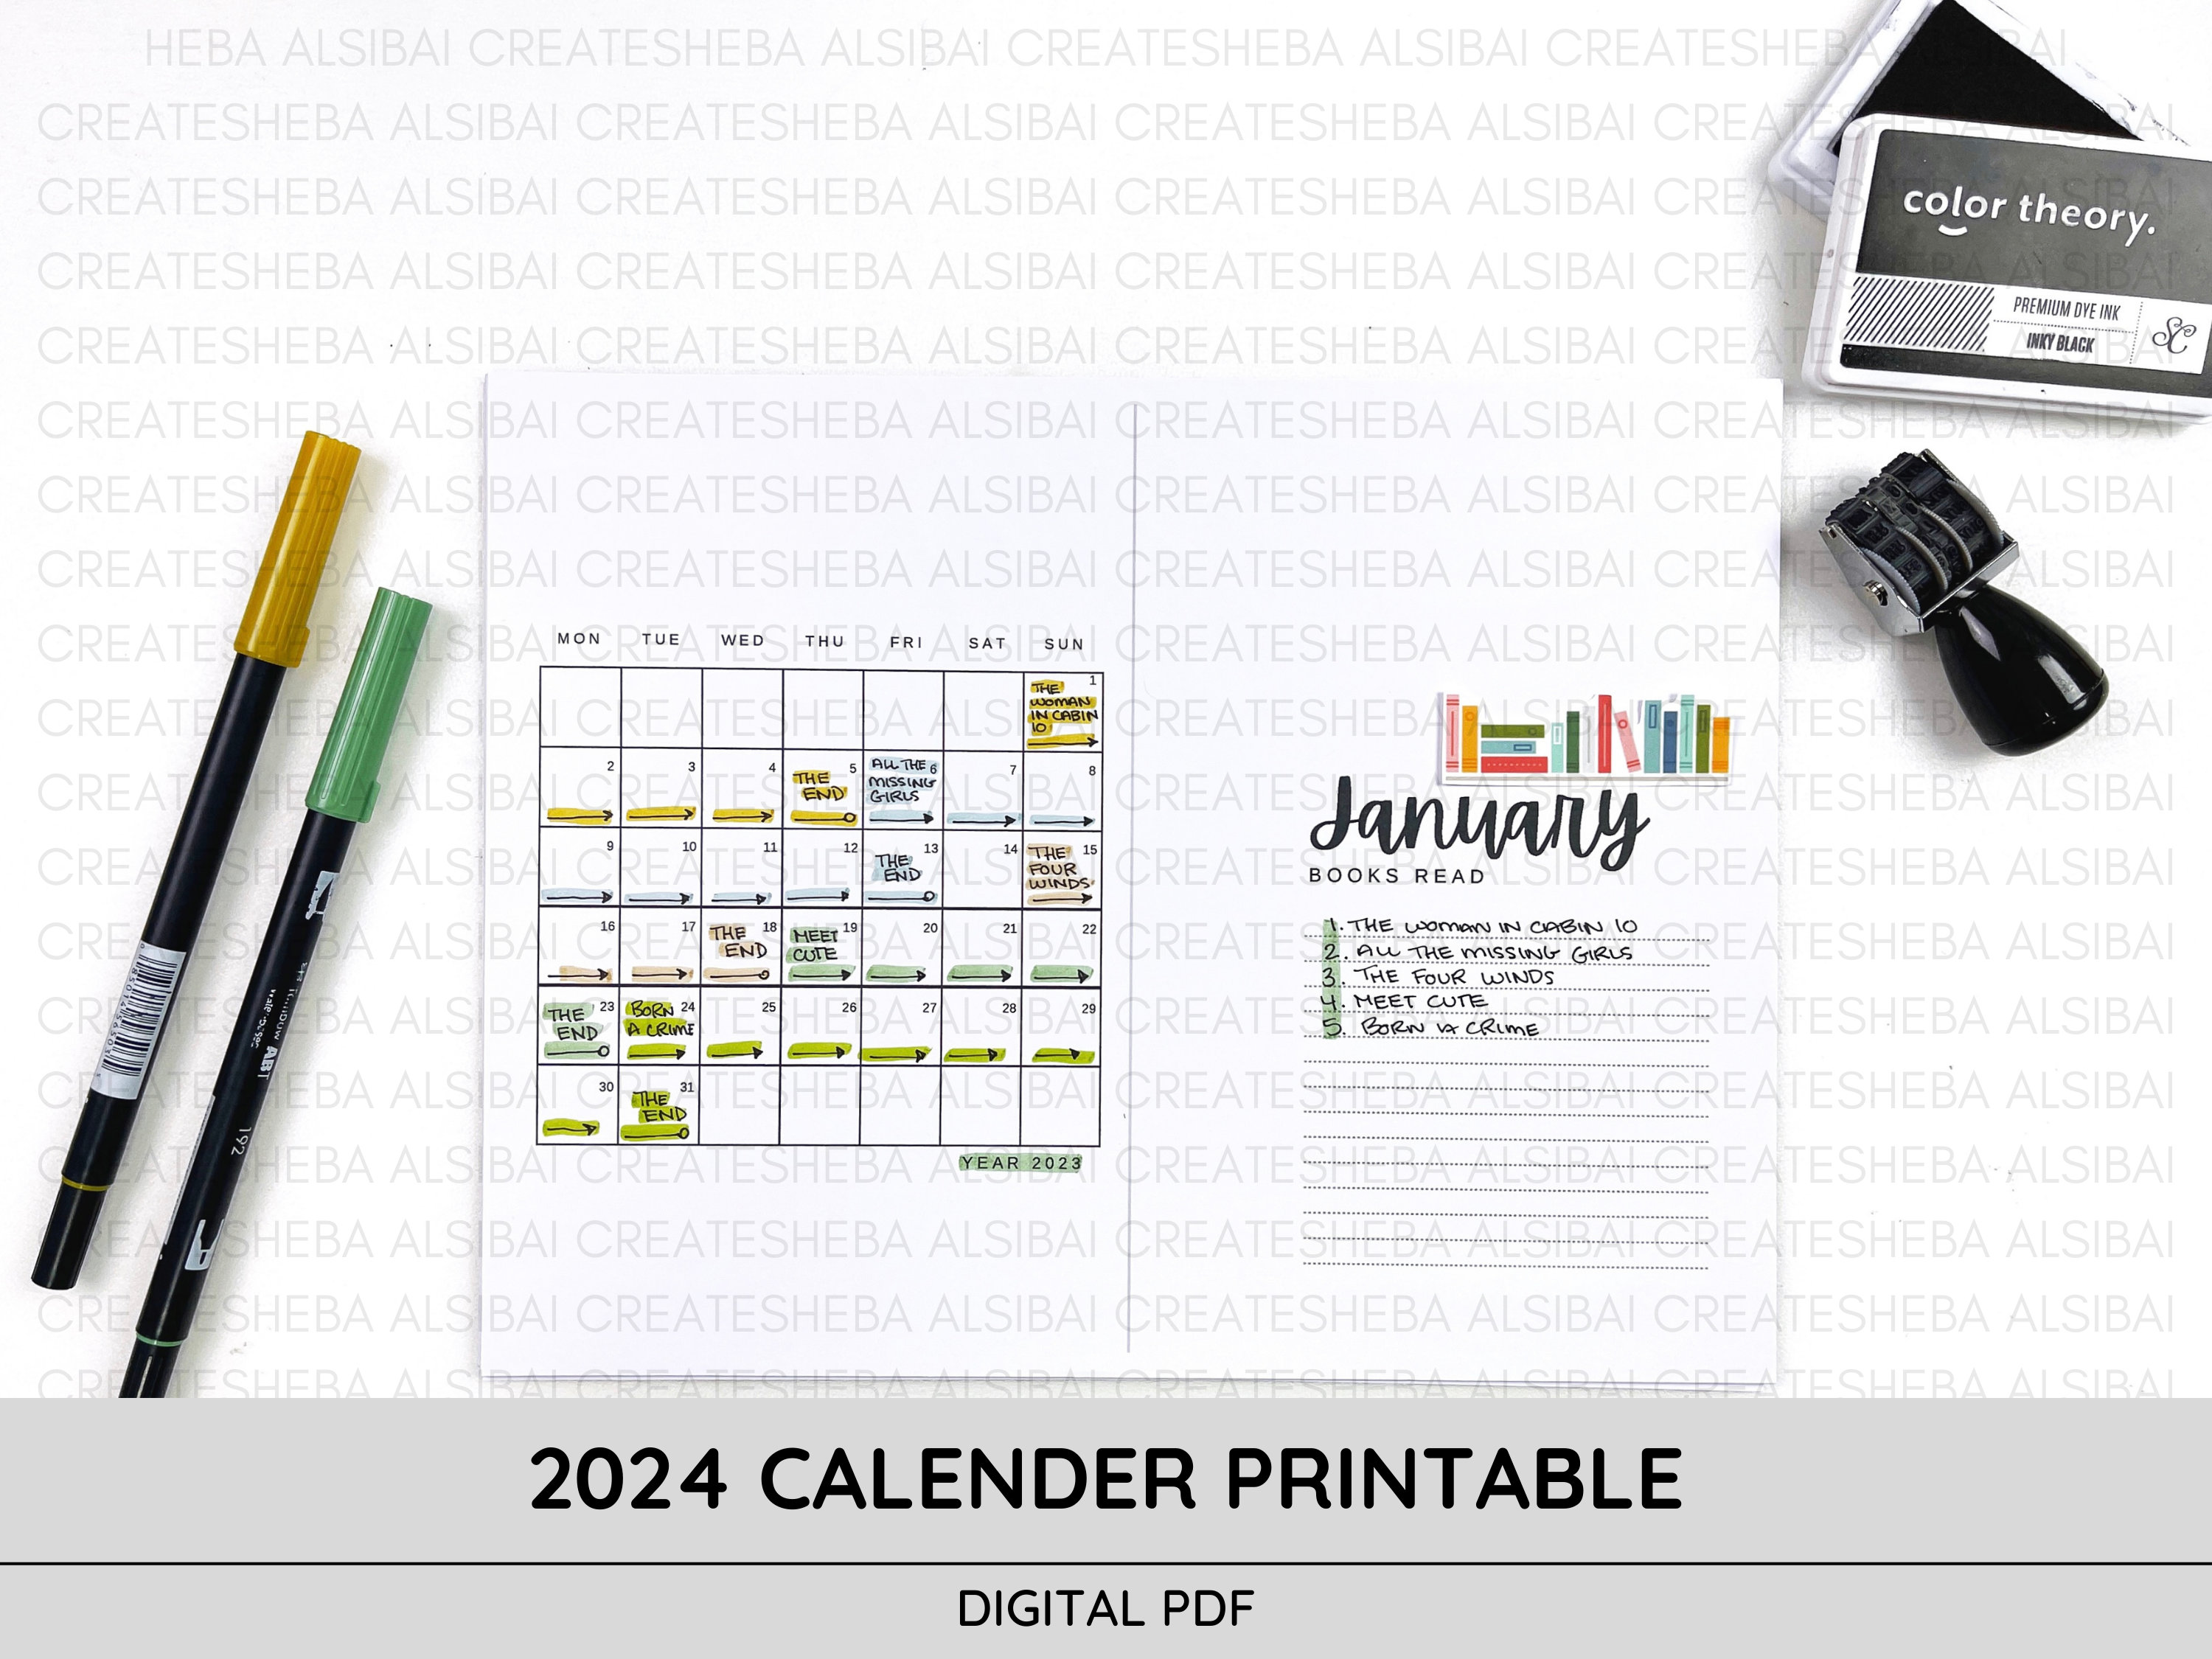 Premade bullet style journal for 2024 - February 🌷🥰 #premade # bulletjournal #2024 #journaladdict 